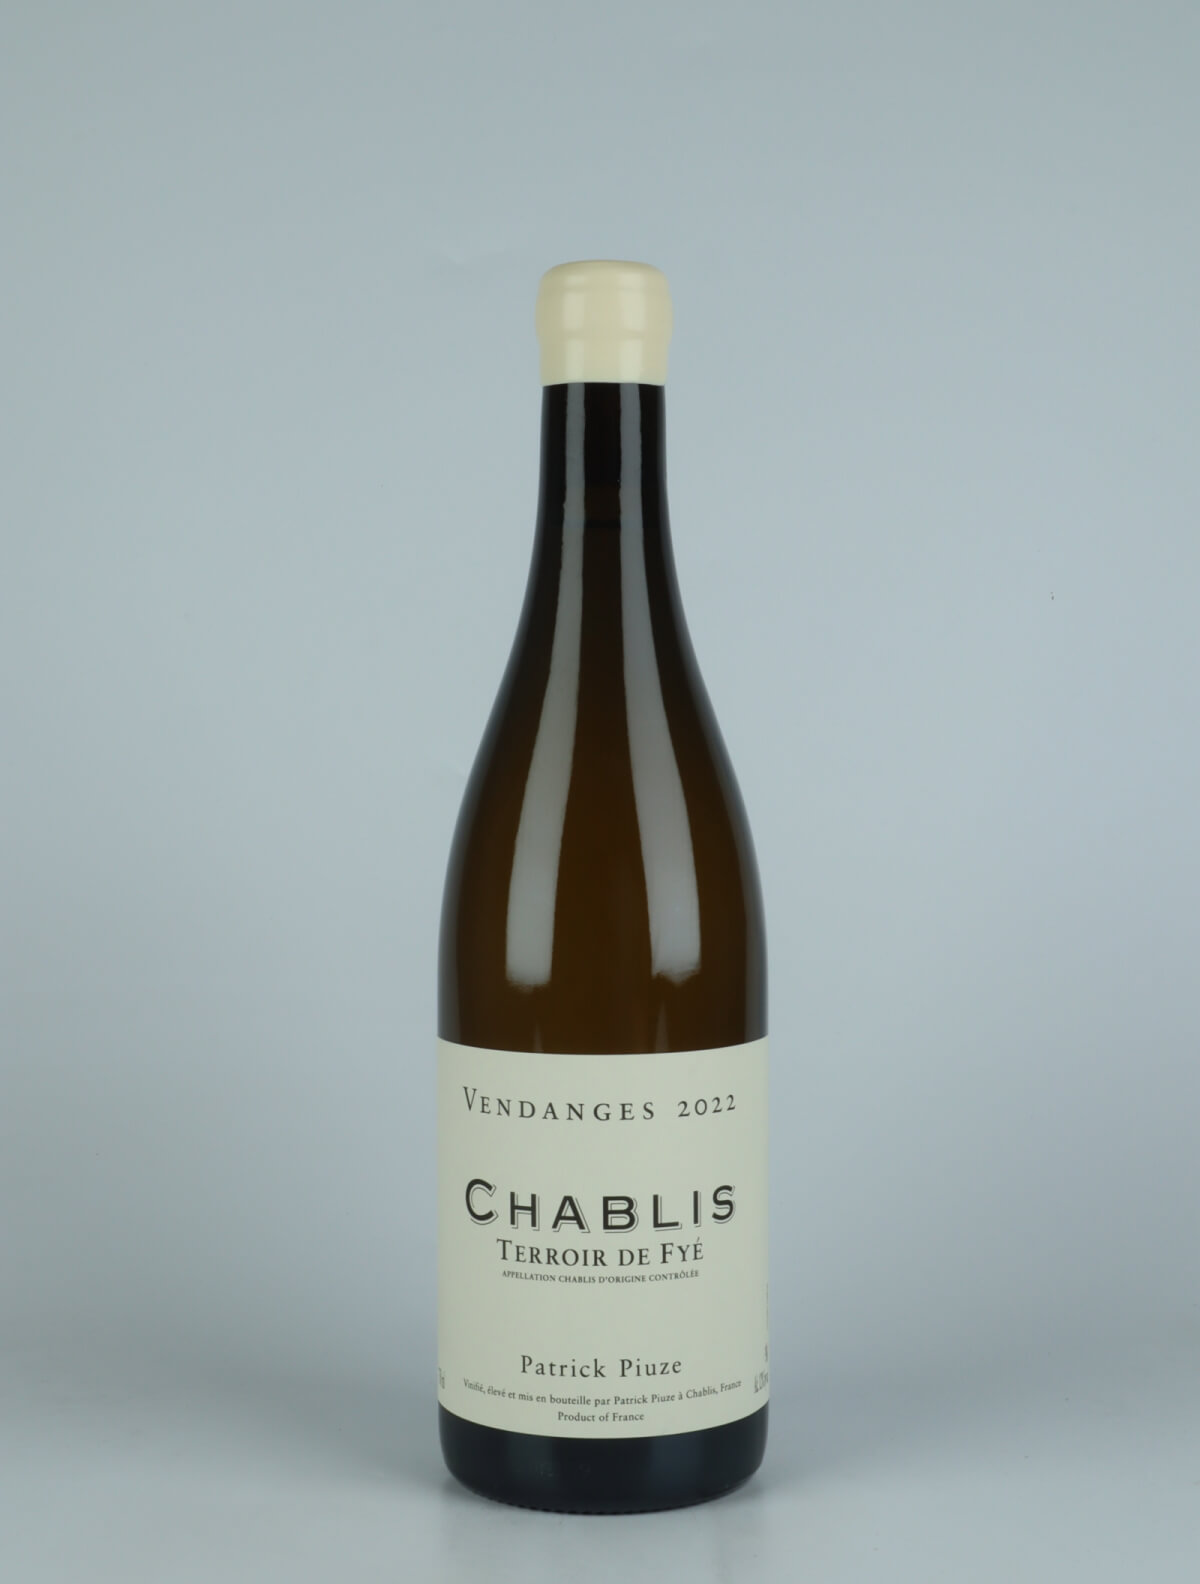 A bottle 2022 Chablis - Terroir de Fyé White wine from Patrick Piuze, Burgundy in France